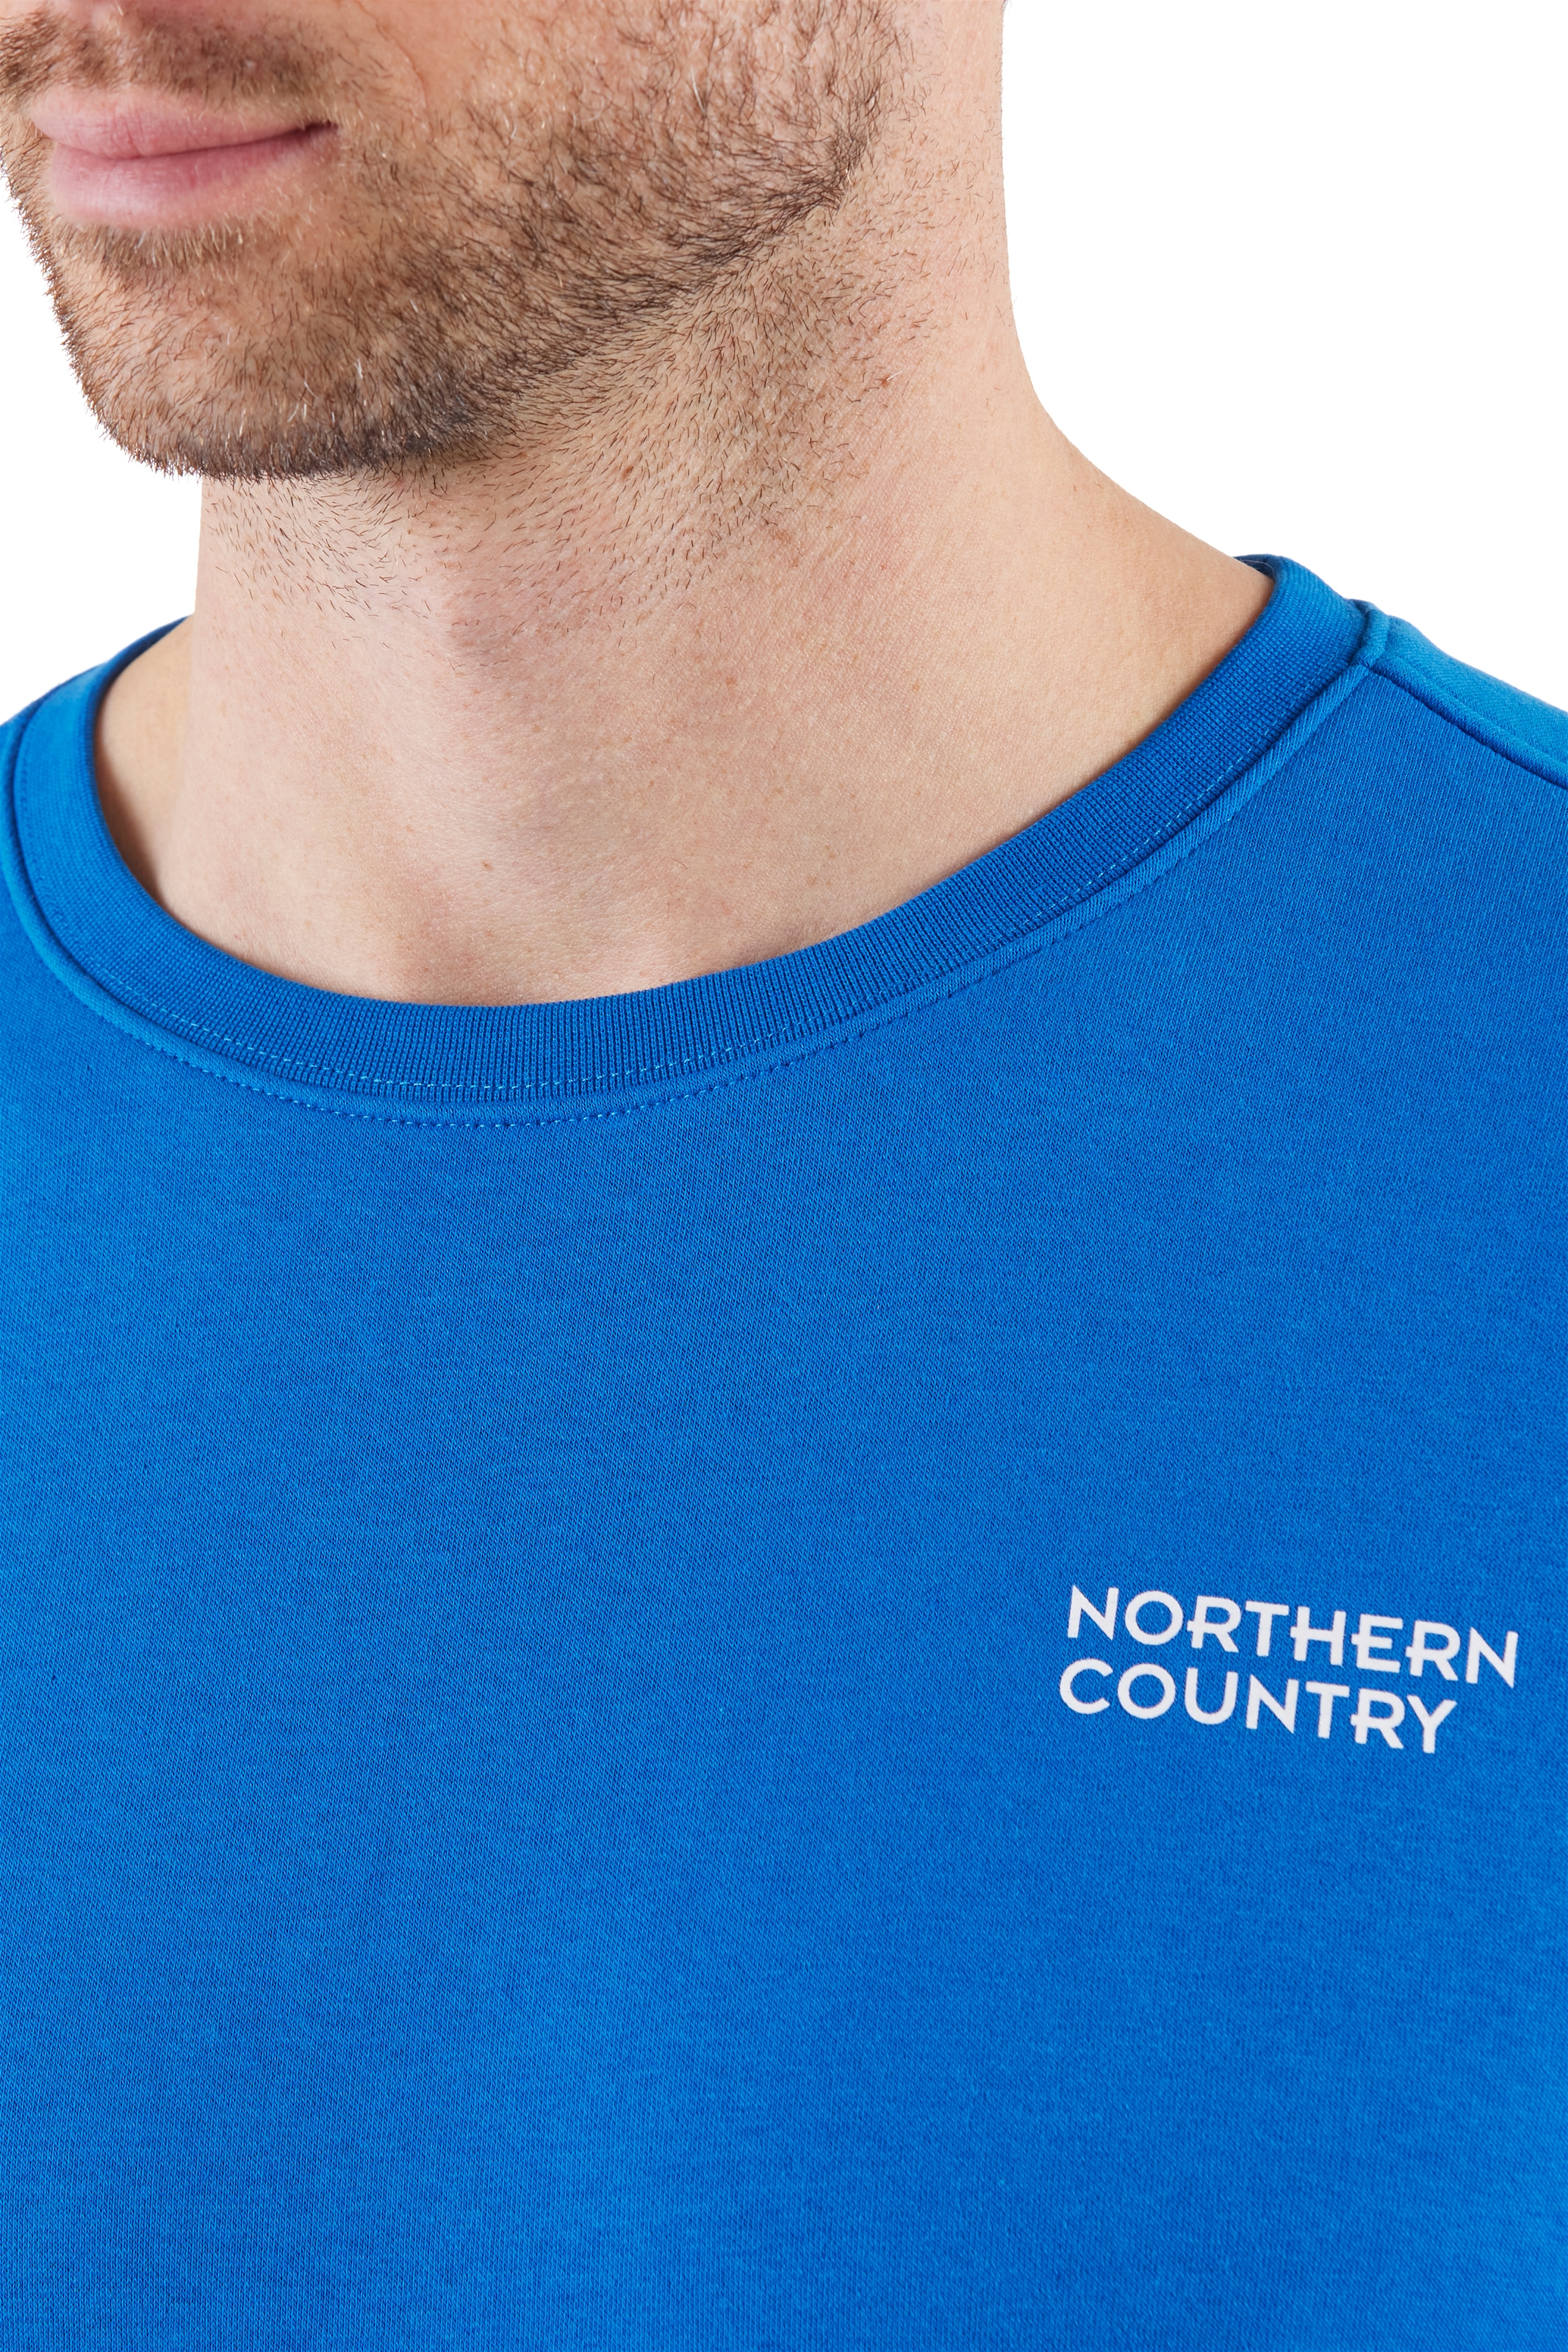 Northern Country Sweatshirt, zum Arbeiten, klassische Passform, leichte Sweatware